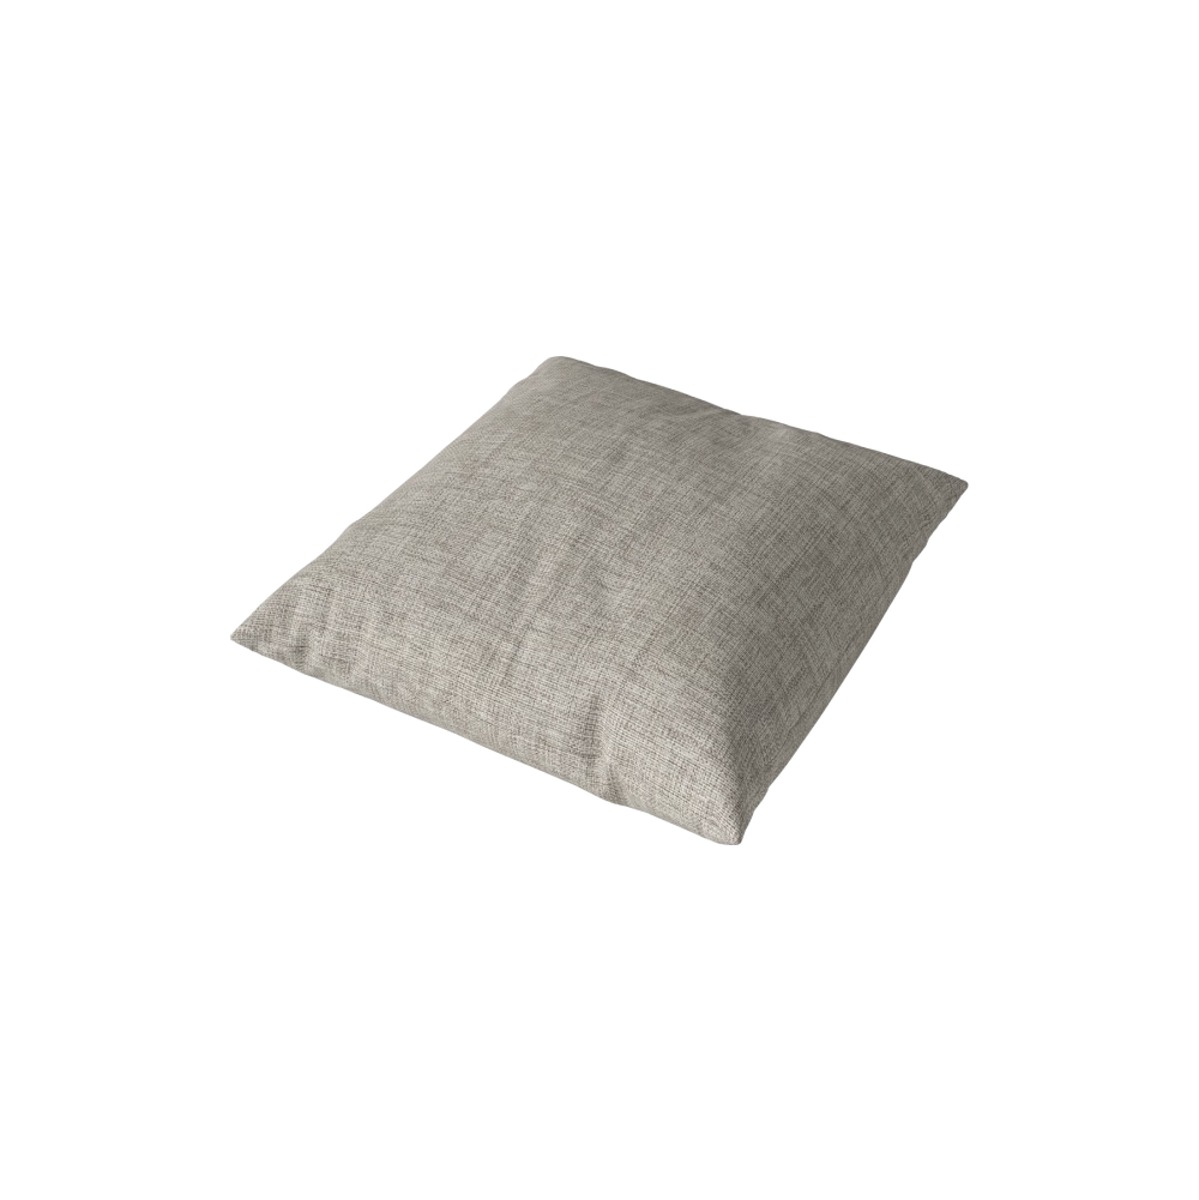 BOLIA Classic Cushion 40x40 Baize - Sand